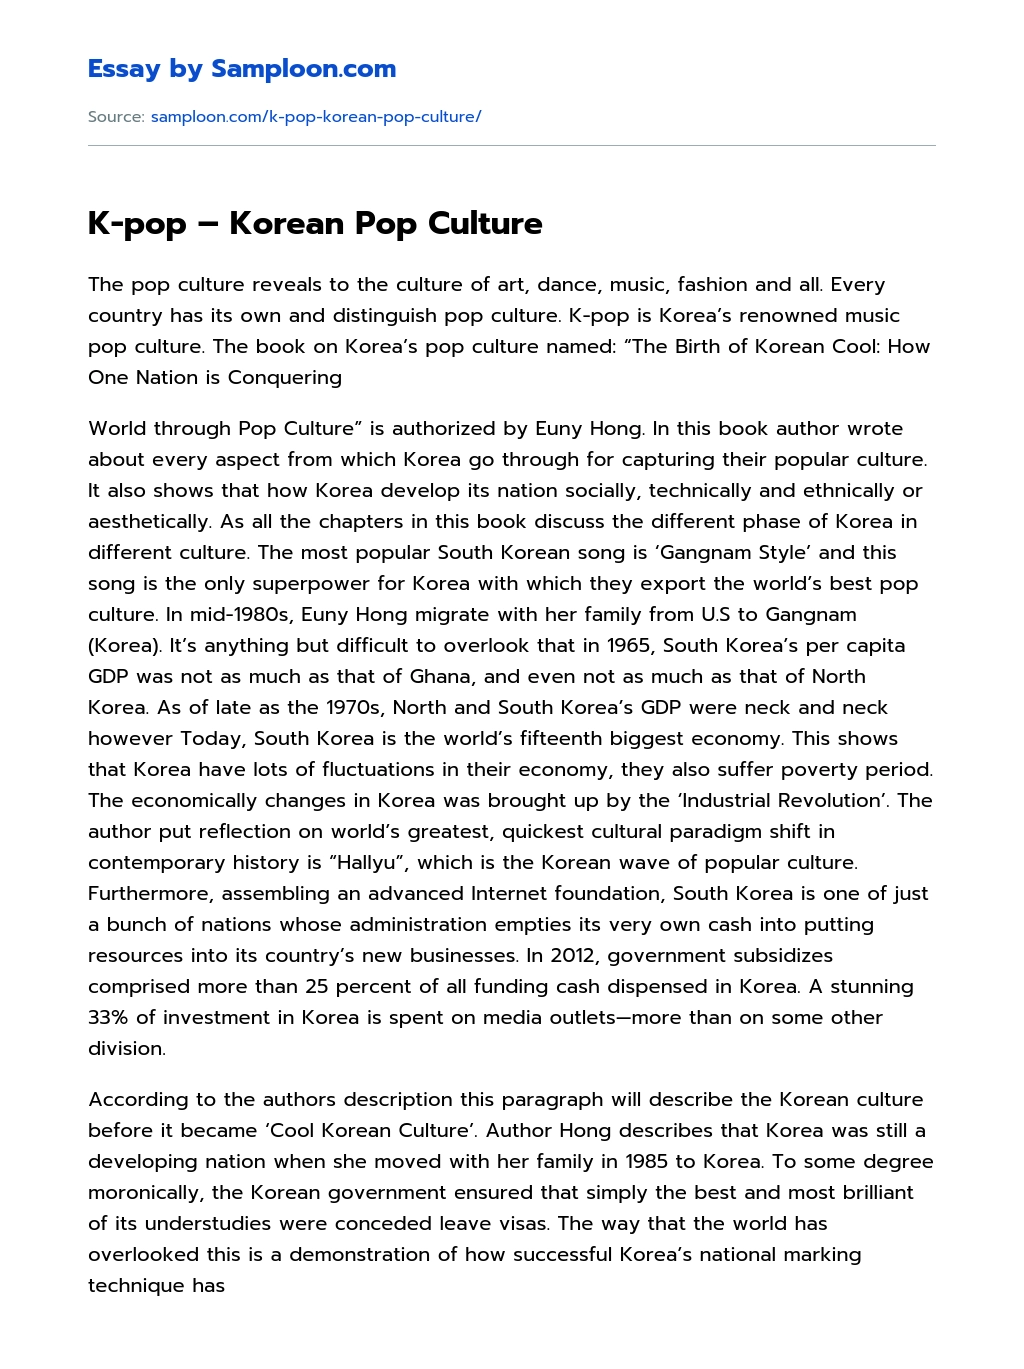 K-pop – Korean Pop Culture essay